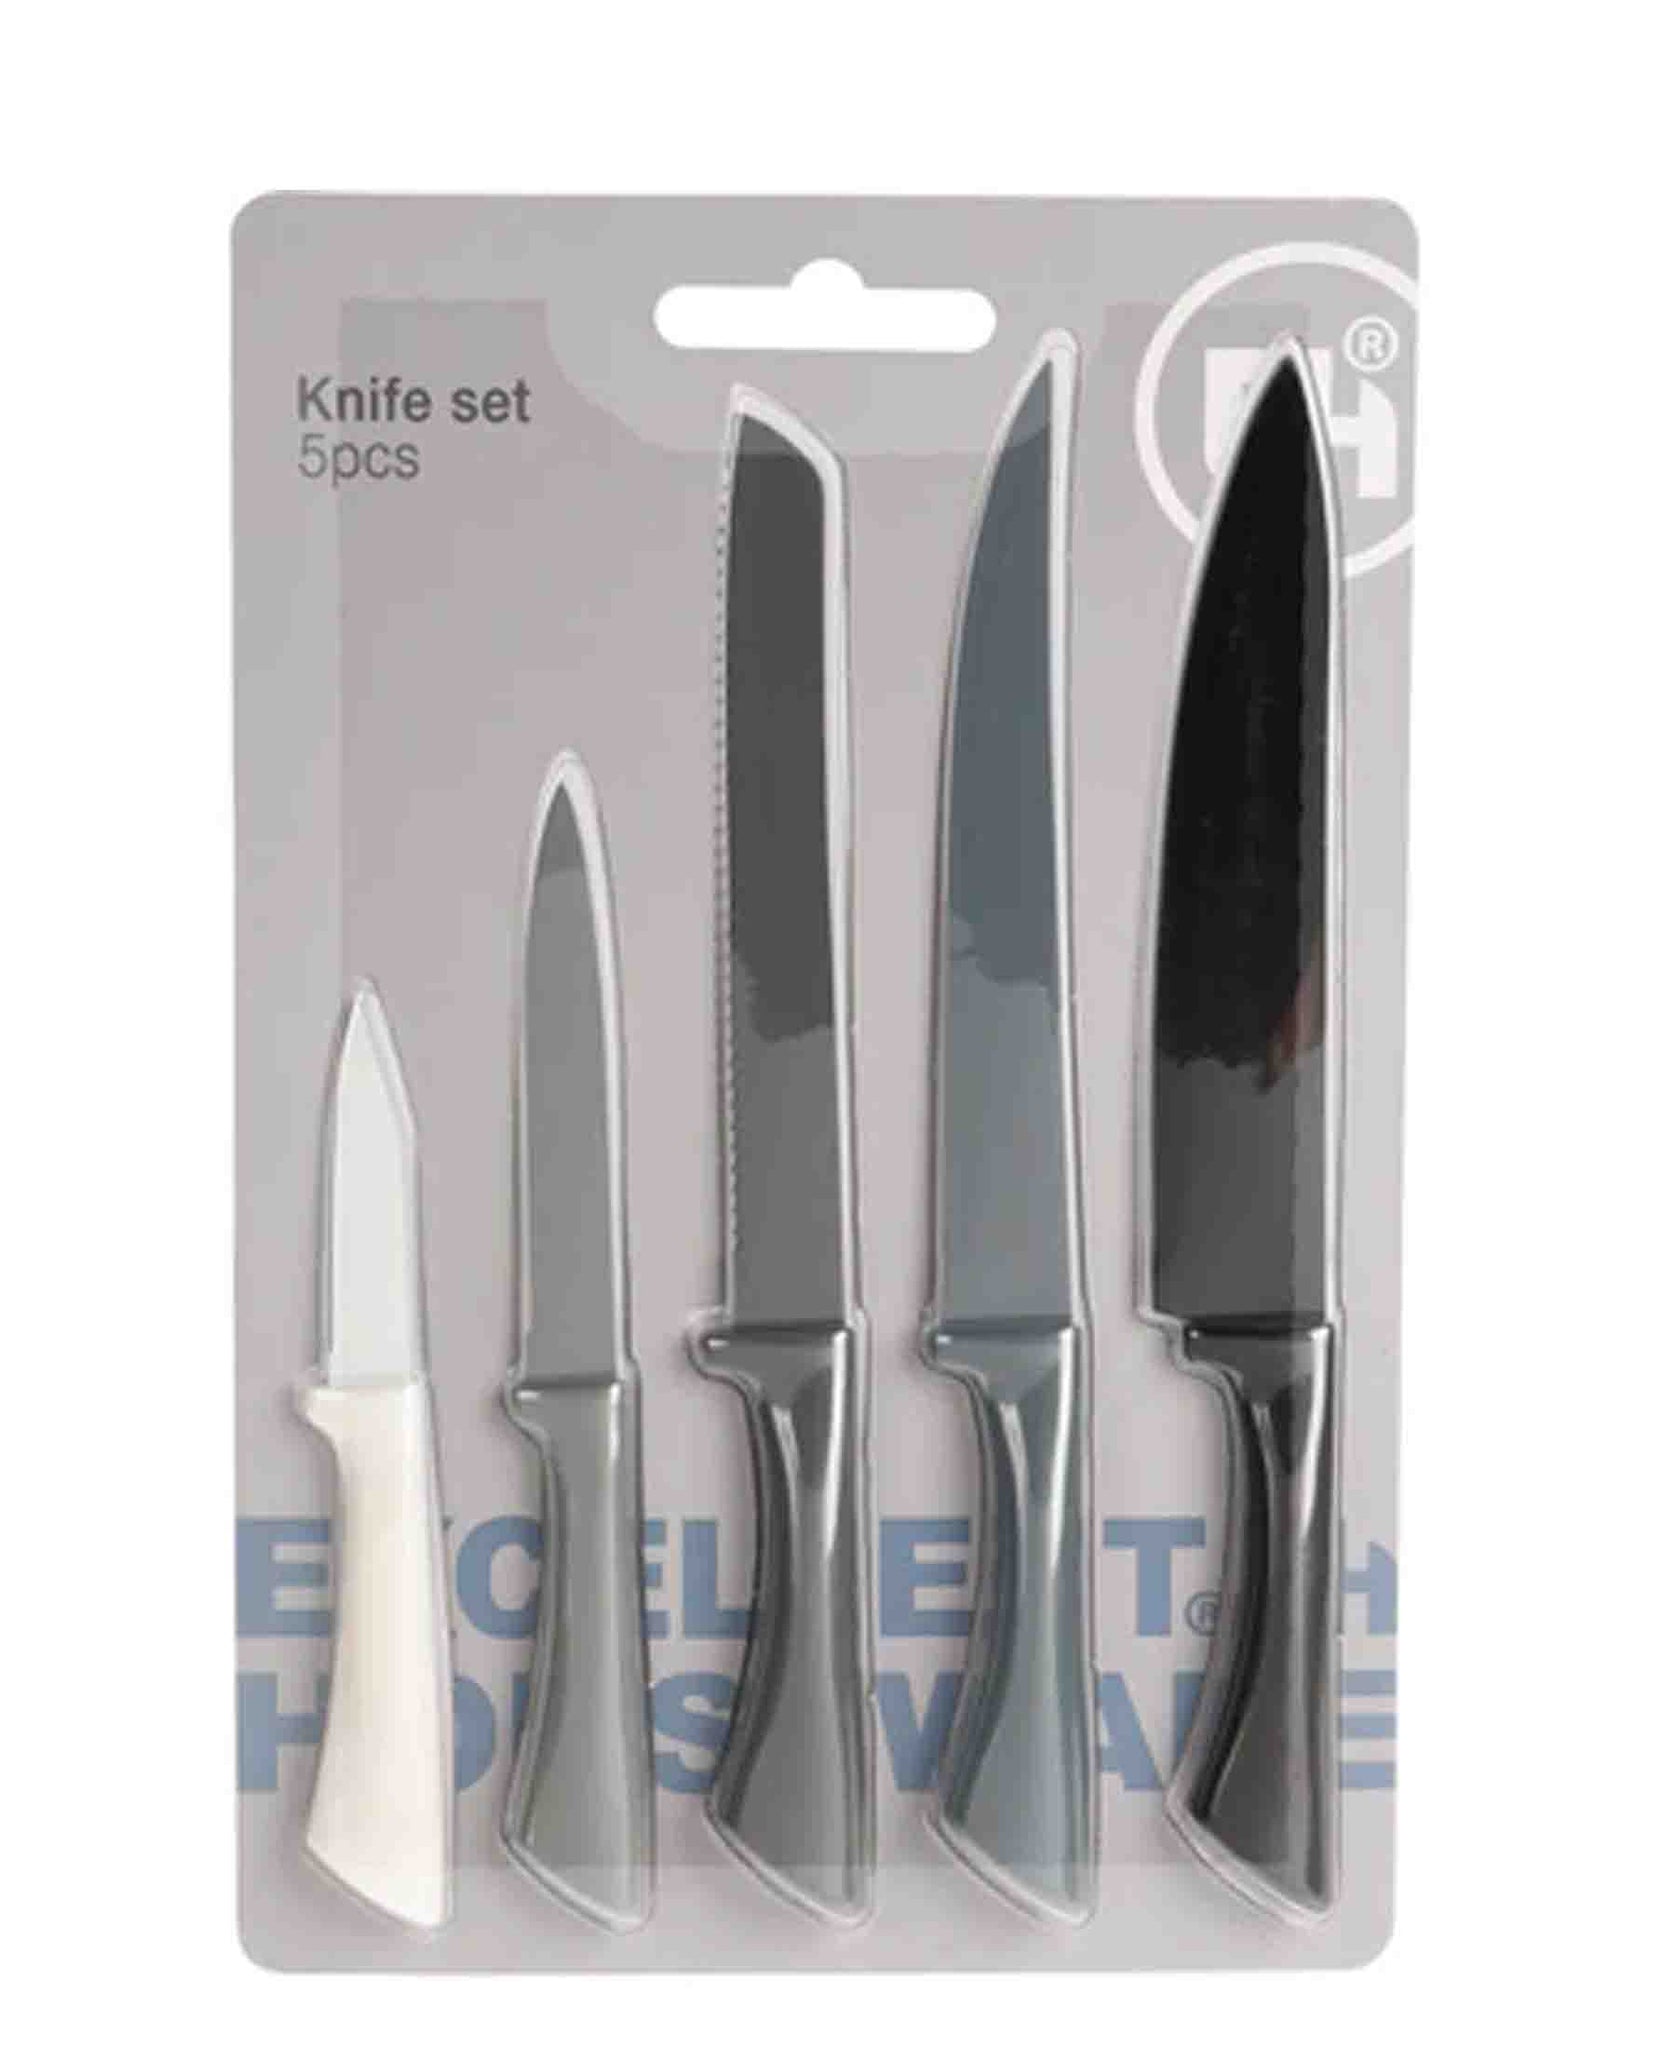 Excellent Houseware 5 Piece Knife Set - Grey, Black & Blue